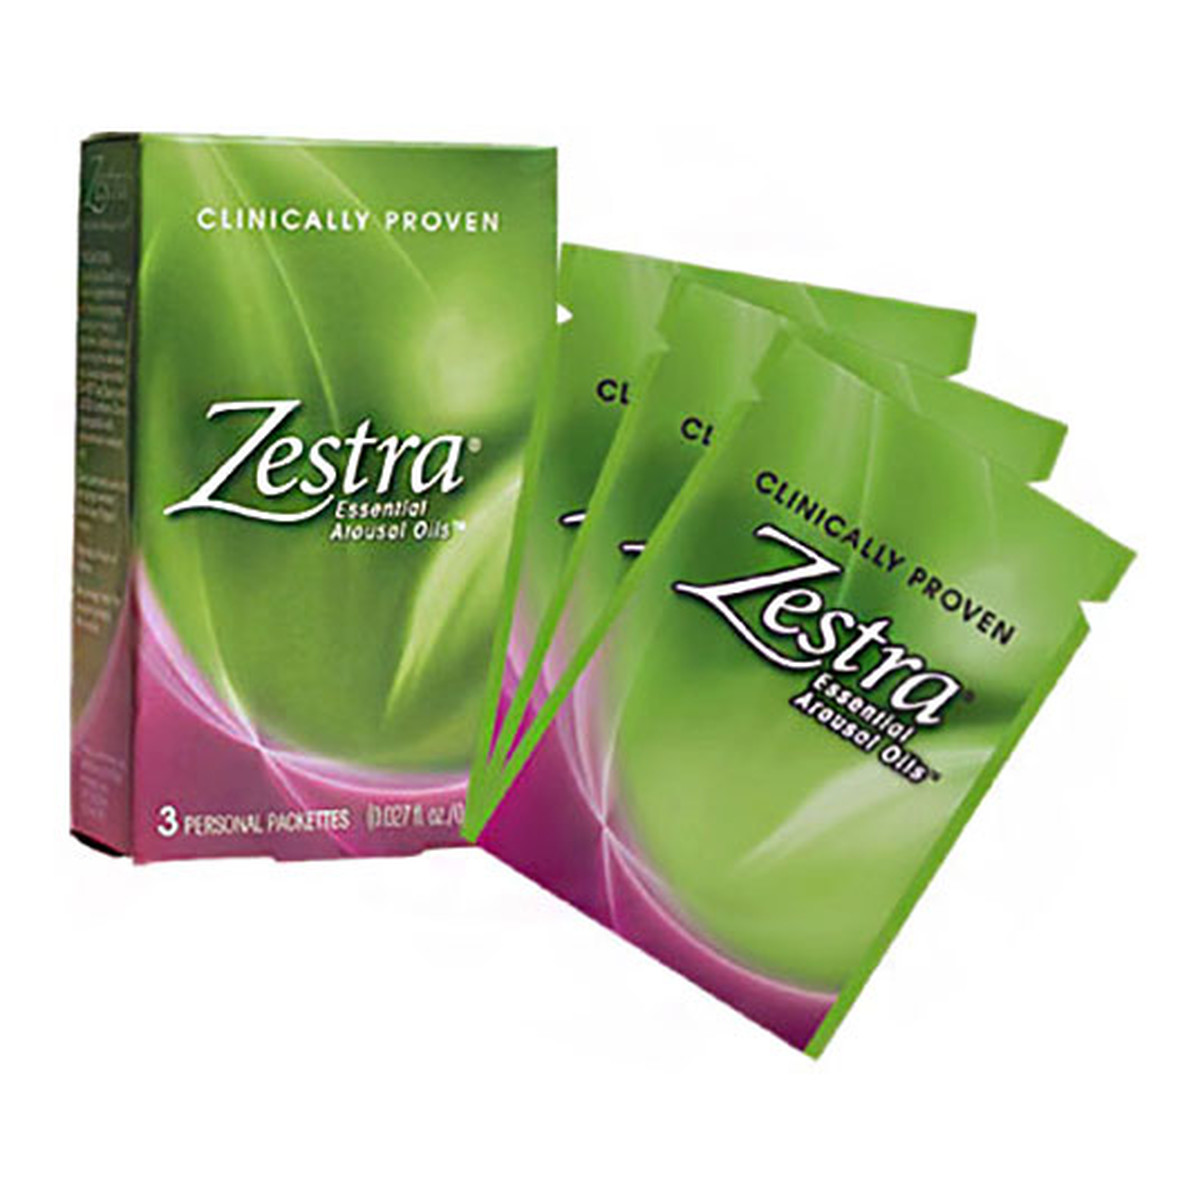 Zestra Essential Arousal Oil olejek wzmacniający orgazm 3x0.8ml 2.4ml